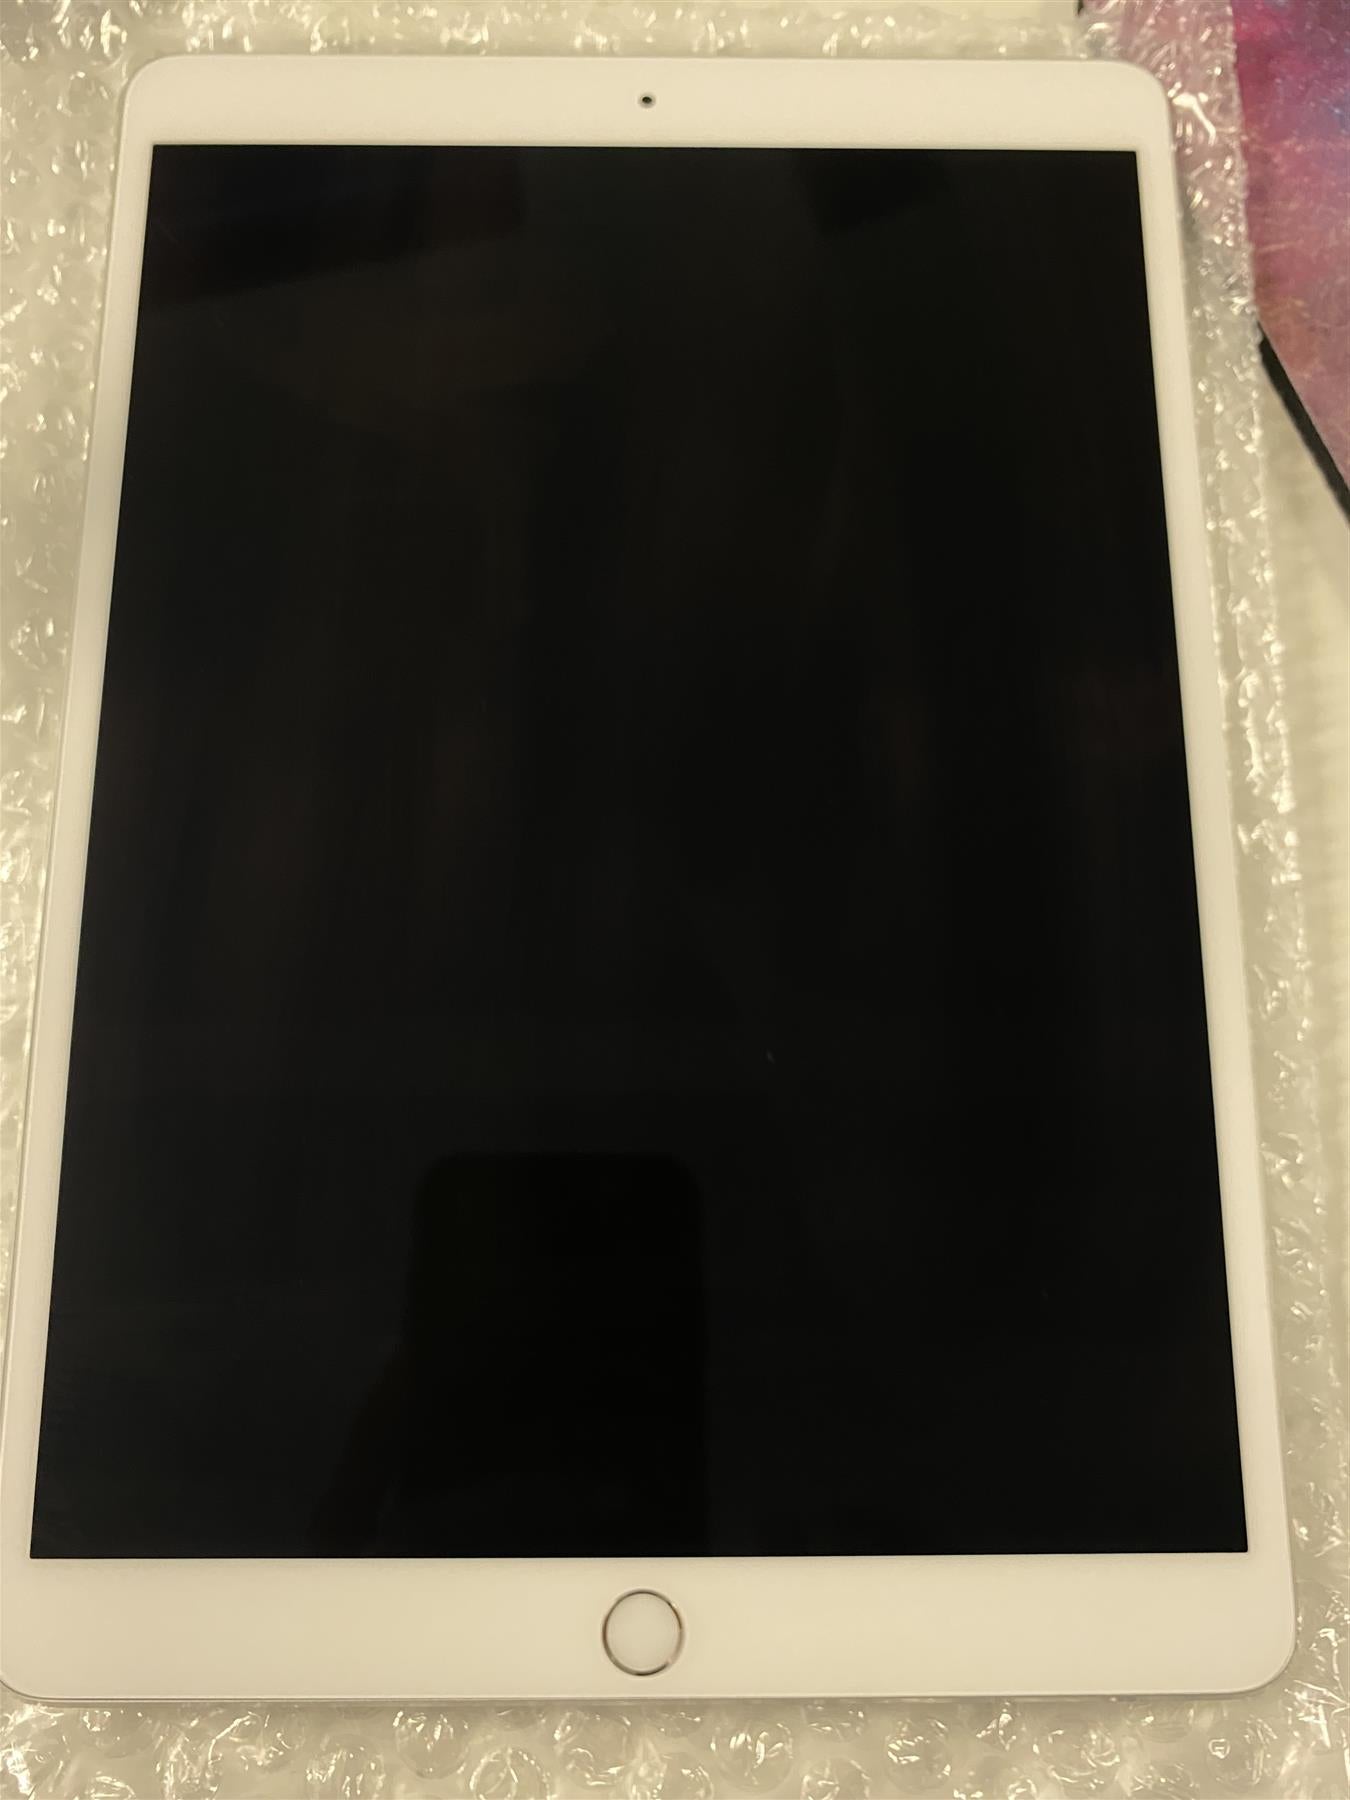 Apple iPad Pro 10.5 (2017) 64GB WiFi Silver - Used